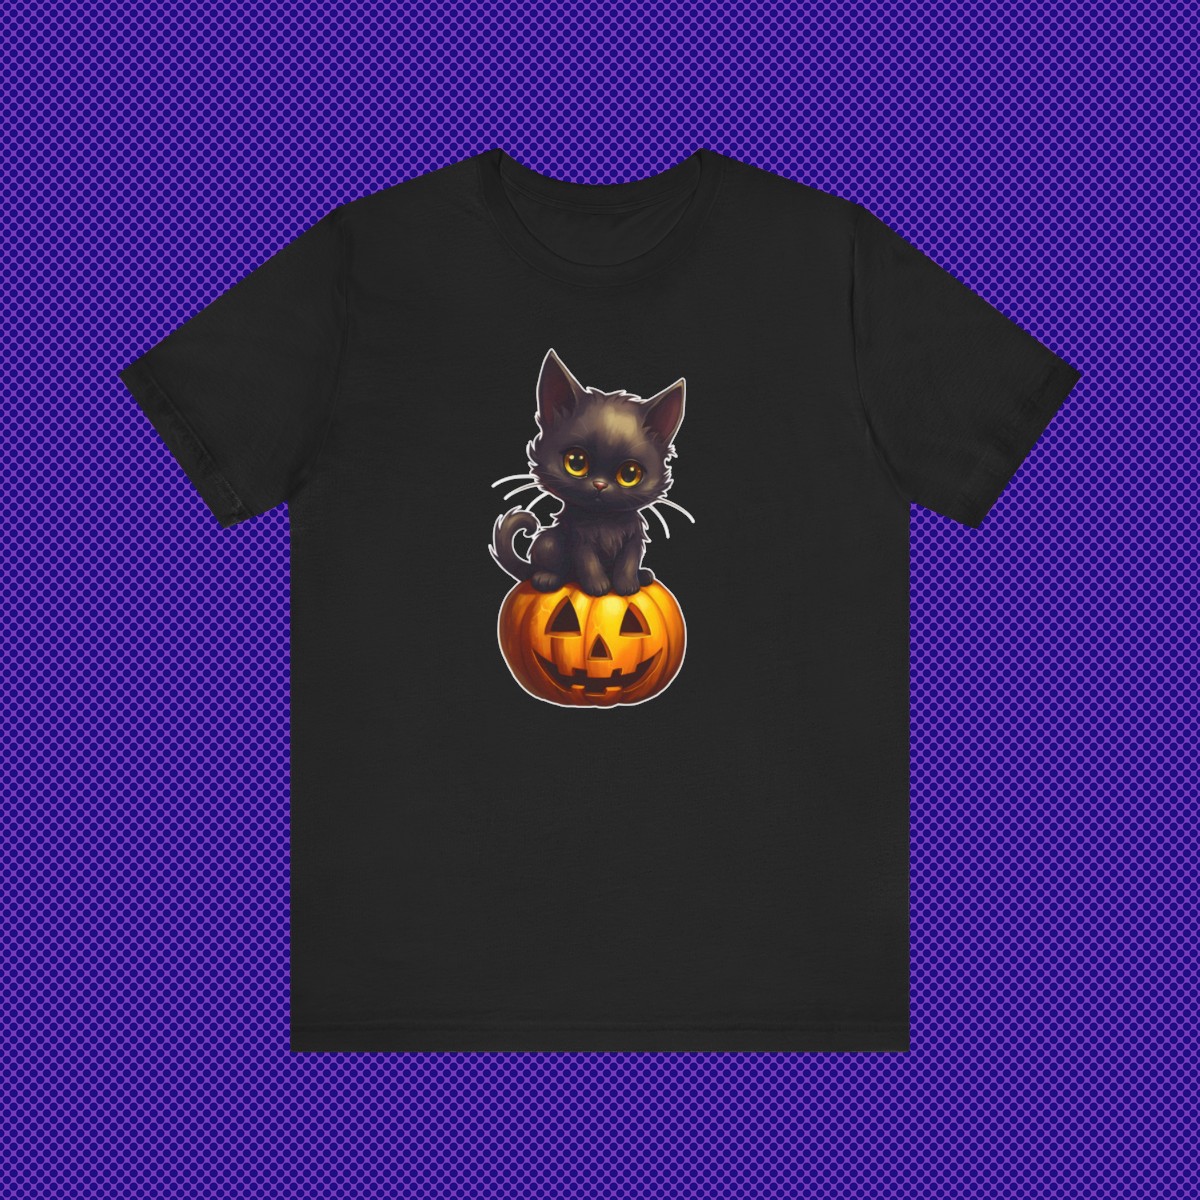 Black Kitten Cat Sitting on a Jack-o-lantern Halloween Pumpkin Unisex Jersey Short Sleeve Tee product thumbnail image